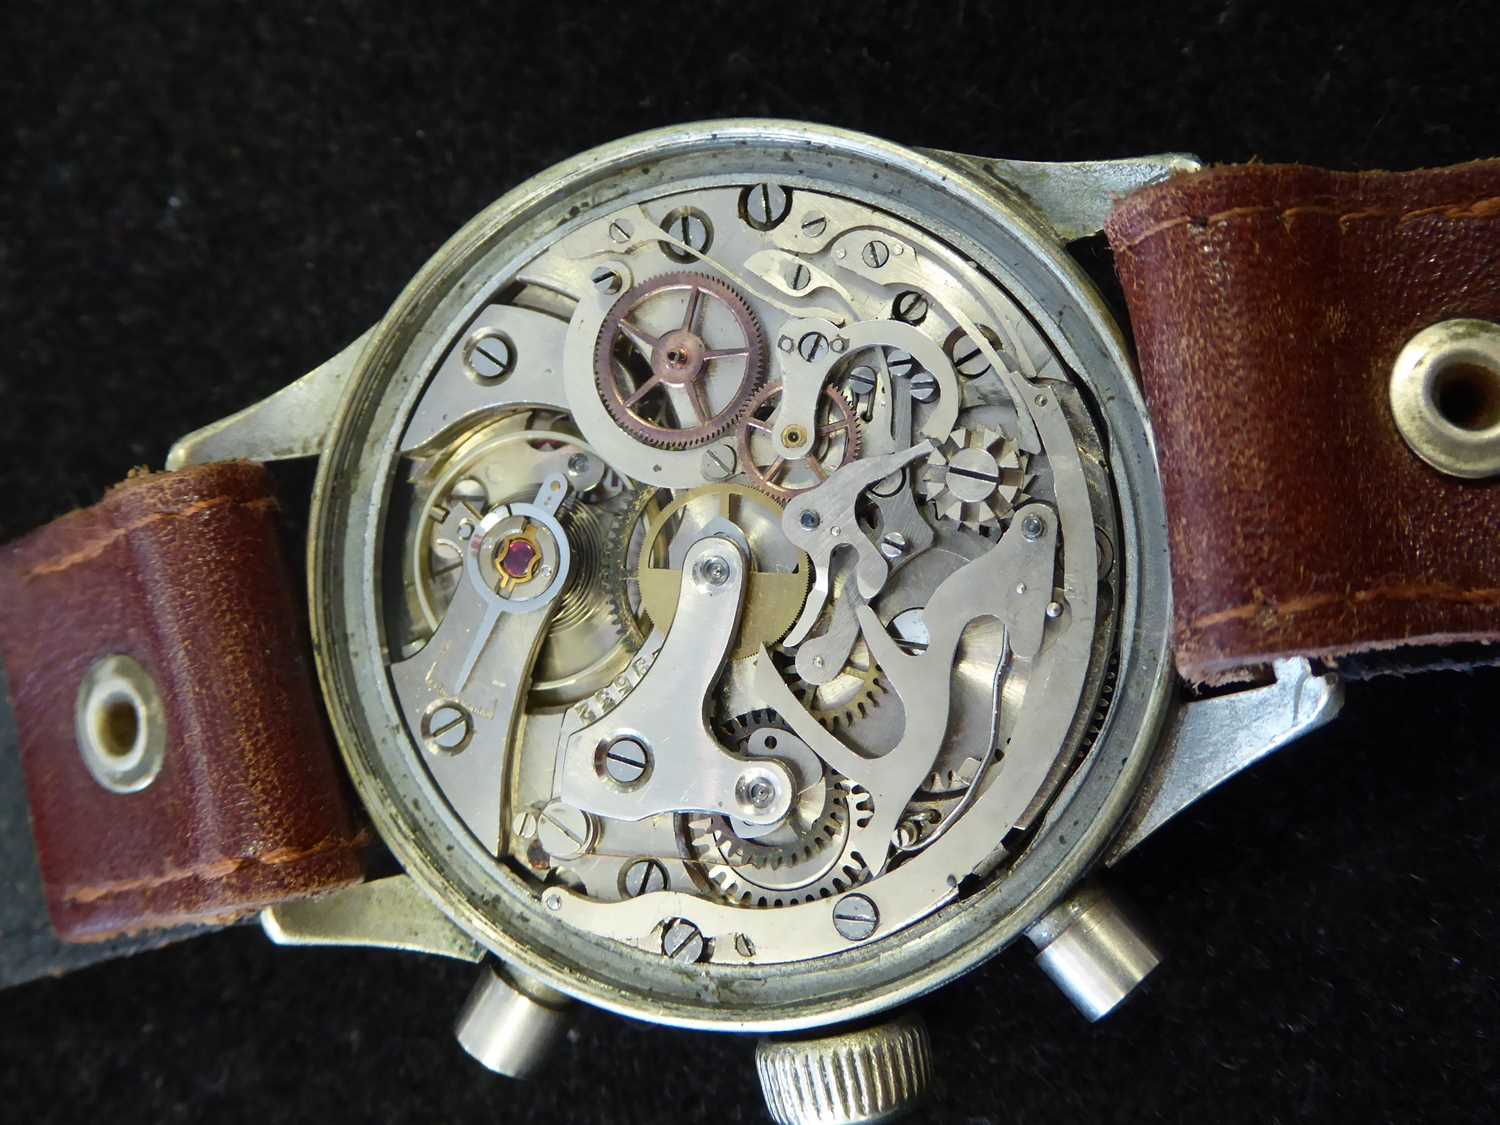 Hanhart: A Rare Second World War German Luftwaffe Pilots Chronograph Wristwatch, signed Hanhart, - Image 3 of 9